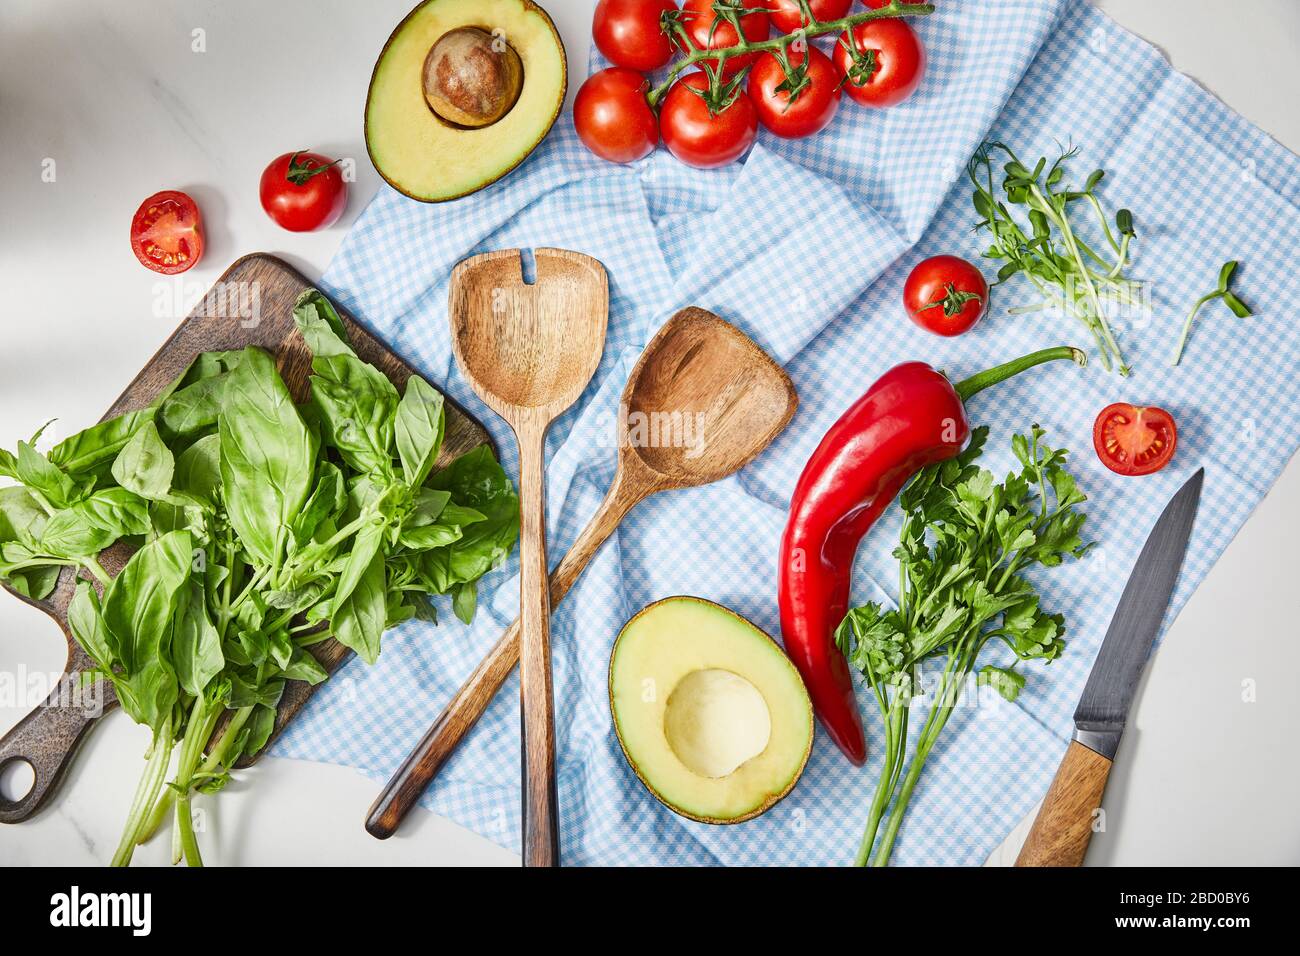 Vue de dessus des légumes, de la verdure, des moitiés d'avocat, des couteaux et des spatules sur le tissu près du basilic sur la planche à découper en blanc Banque D'Images